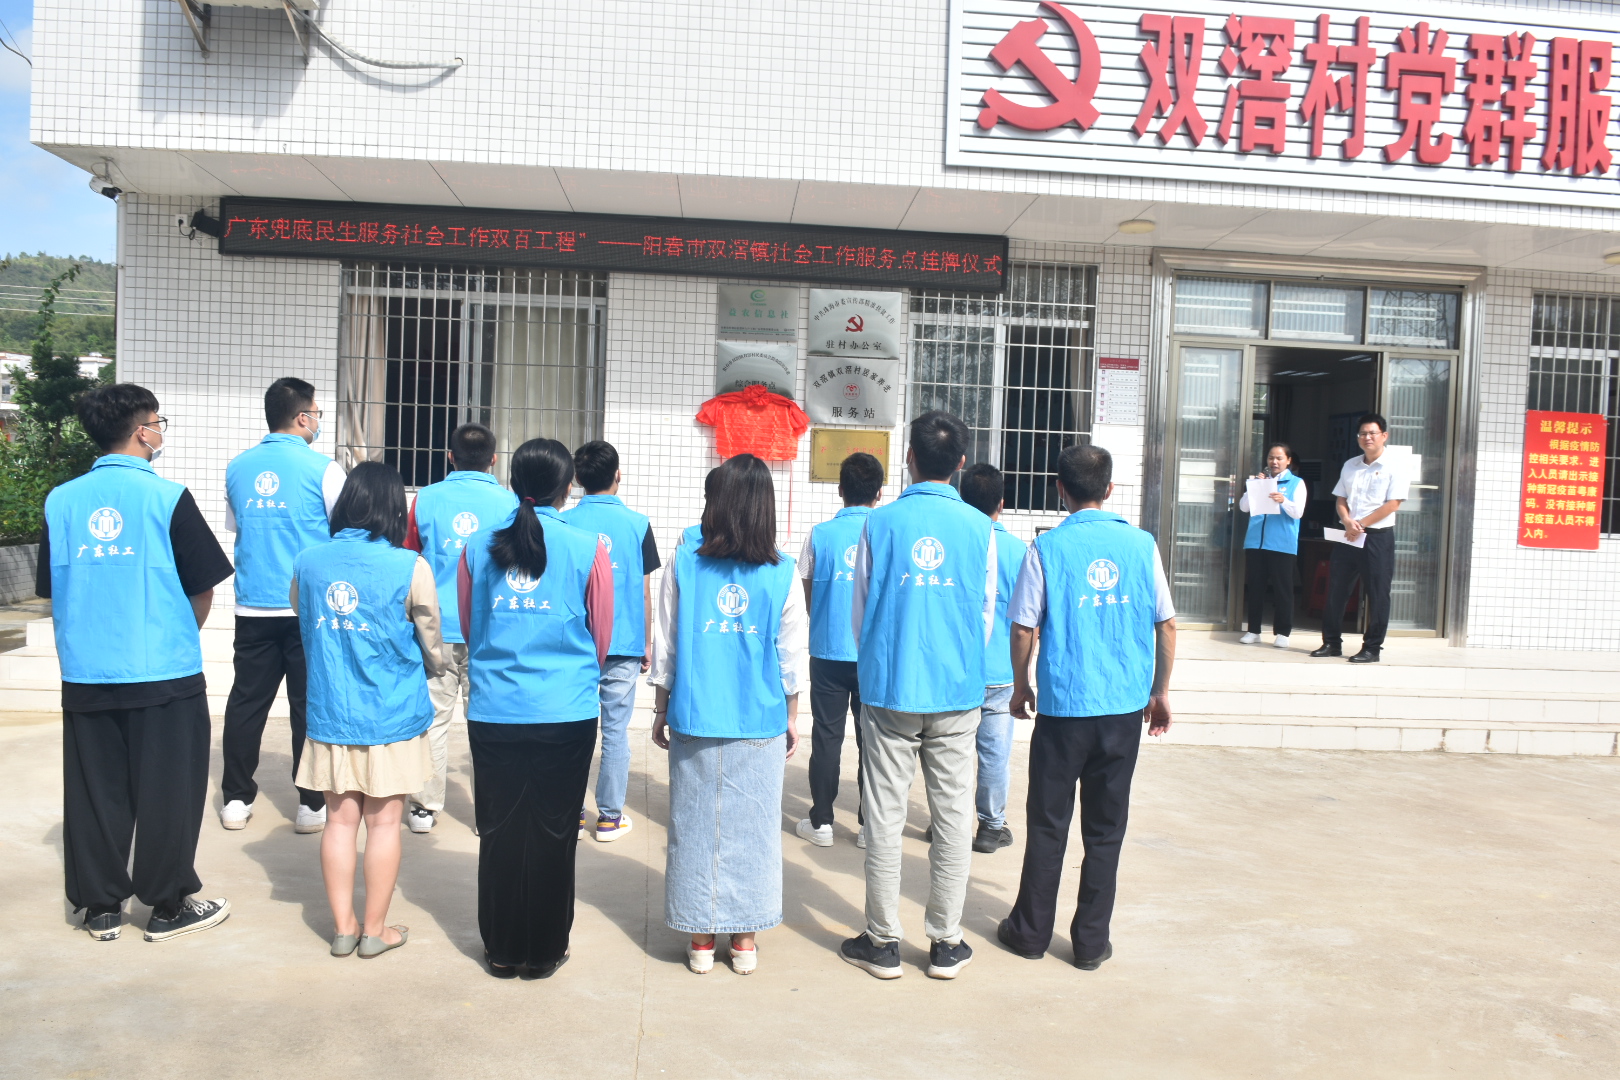 双滘镇社会工作服务站正式成立揭牌